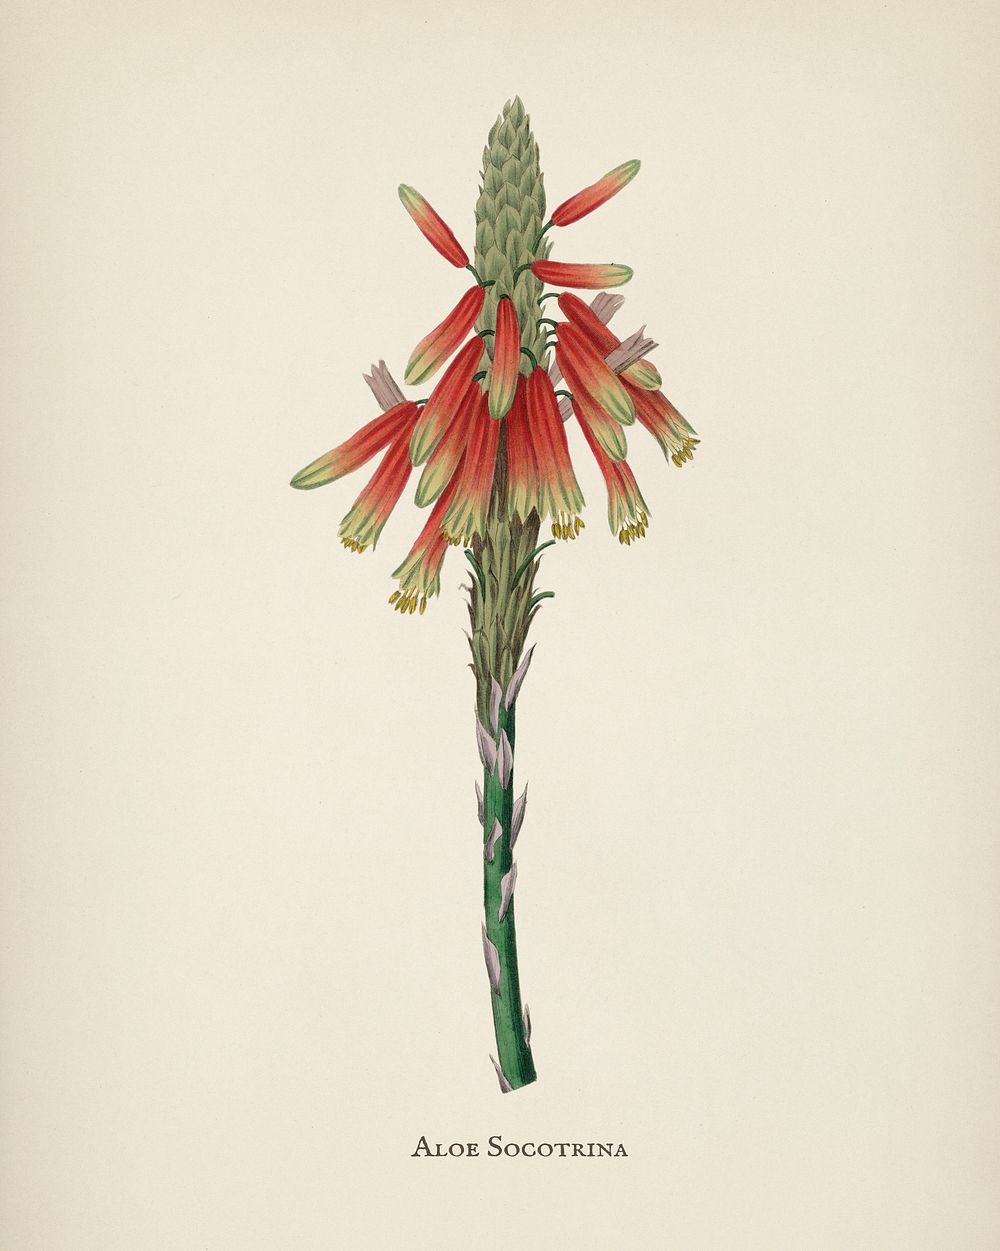 Aloe socotrina illustration from Medical Botany (1836) by John Stephenson and James Morss Churchill.